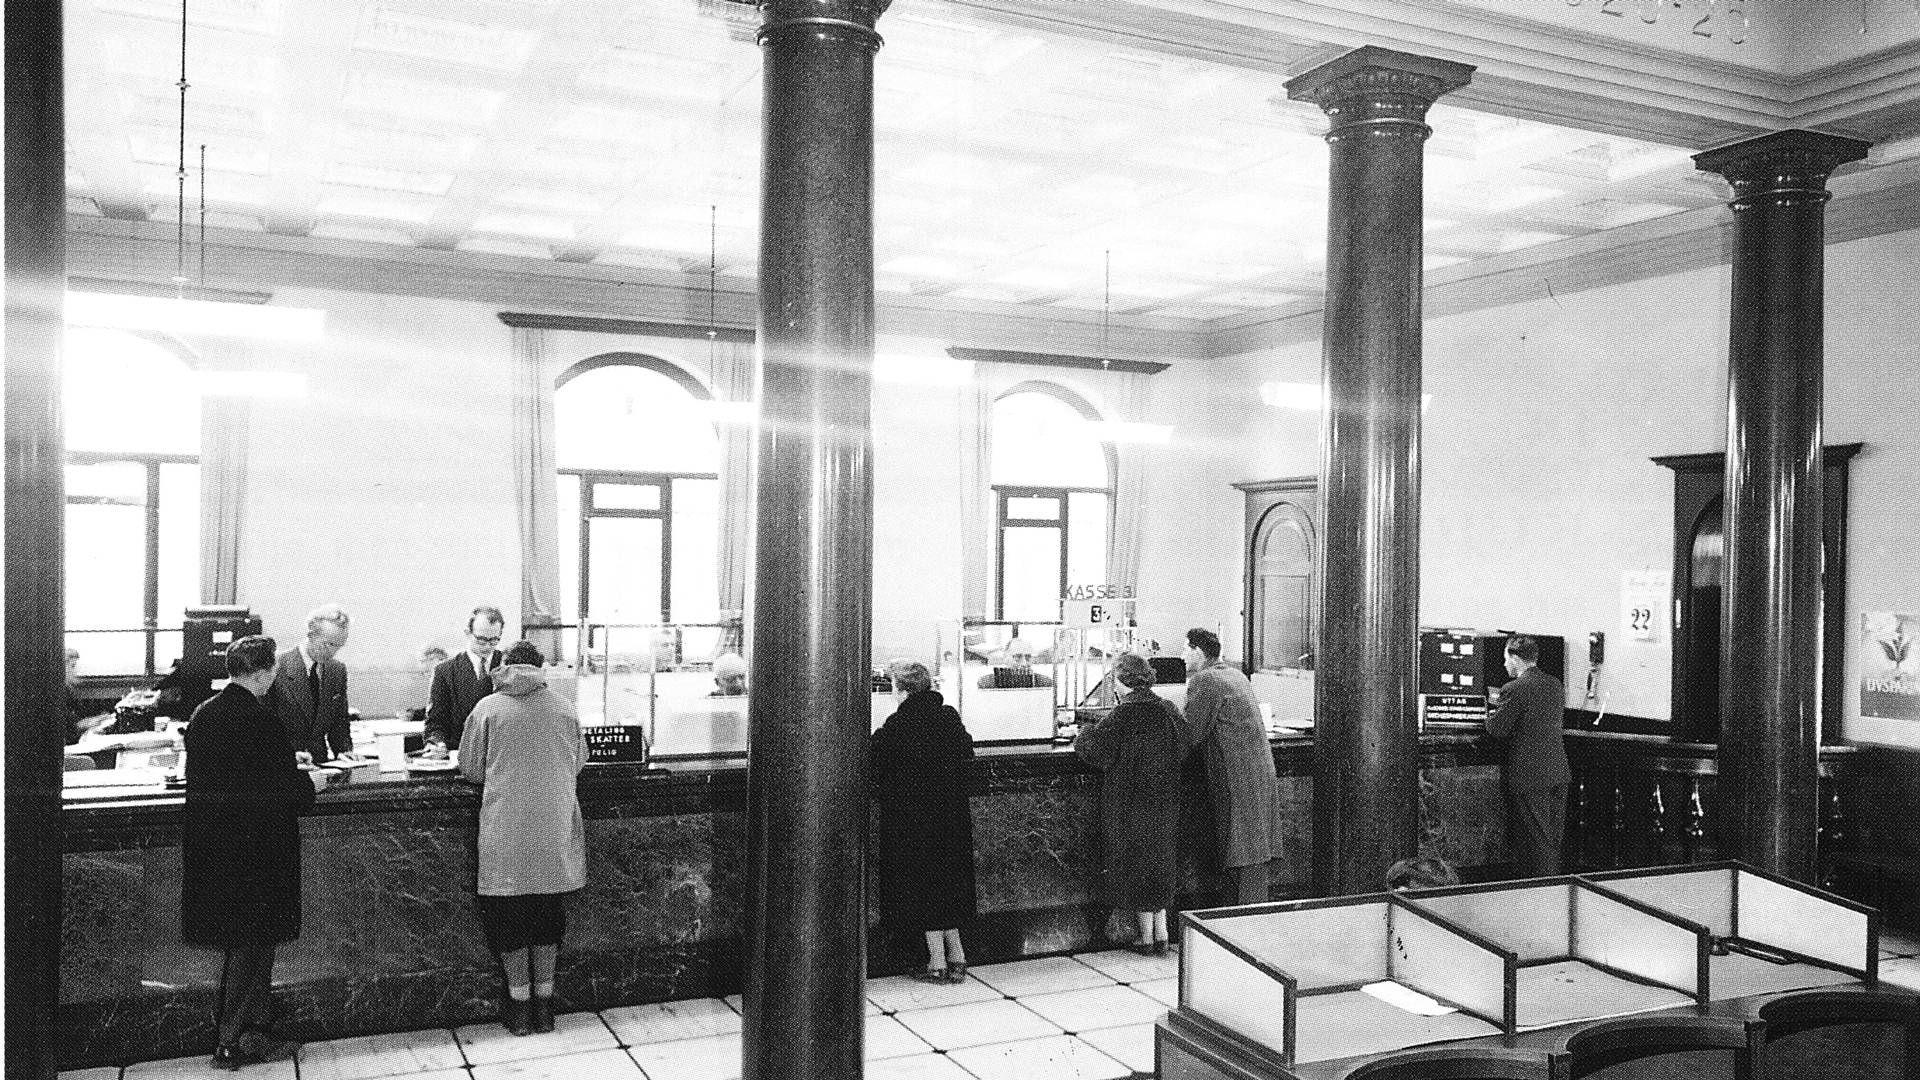 Slik så det ut når trondhjemmerne gikk i banken for å ta ut penger i 1956. | Foto: Sparebank 1 SMN